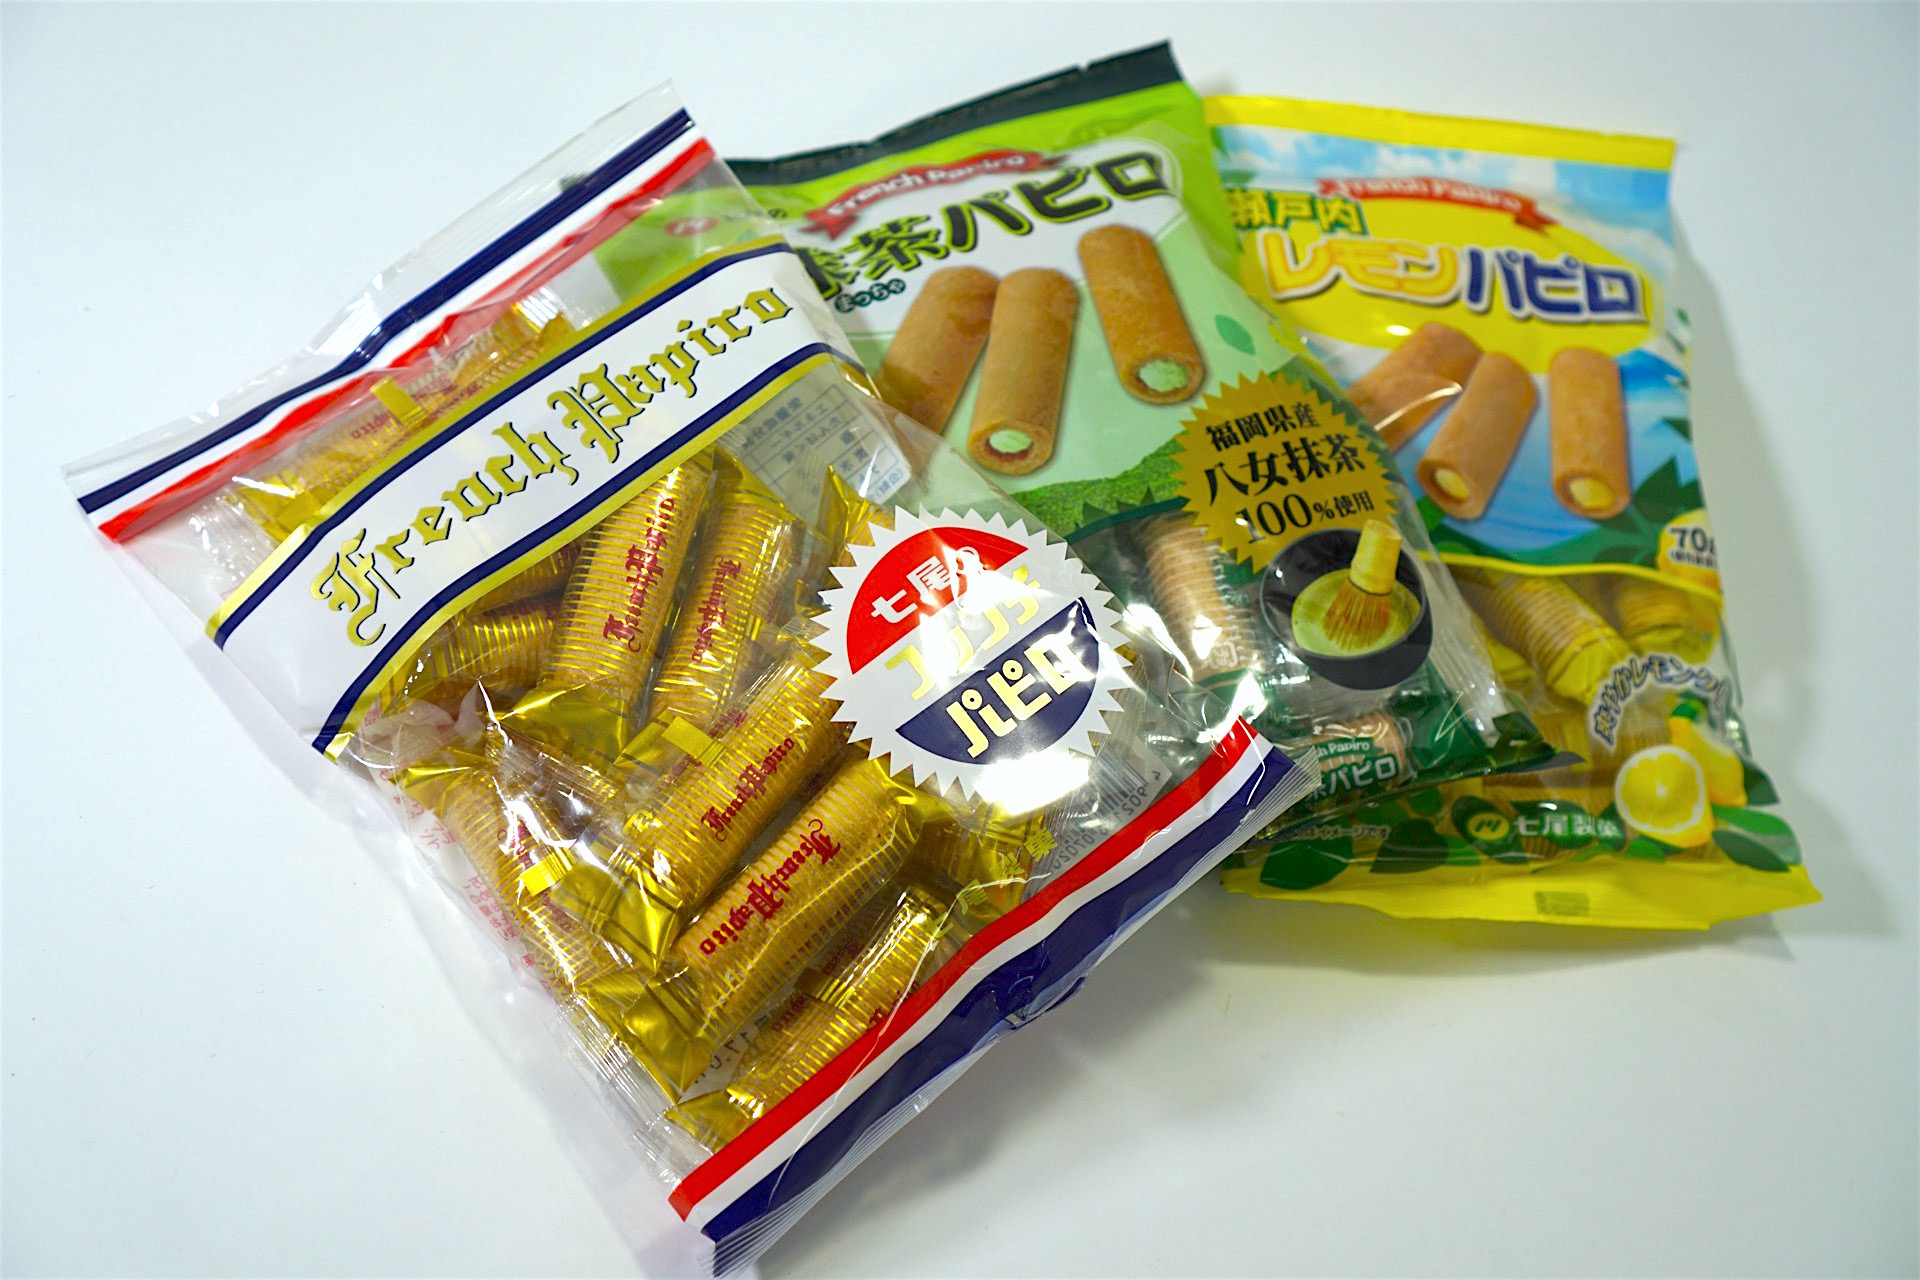 しょみグル 七尾製菓の パピロ 昭和の懐かしオヤツ シリーズ Itoito Style